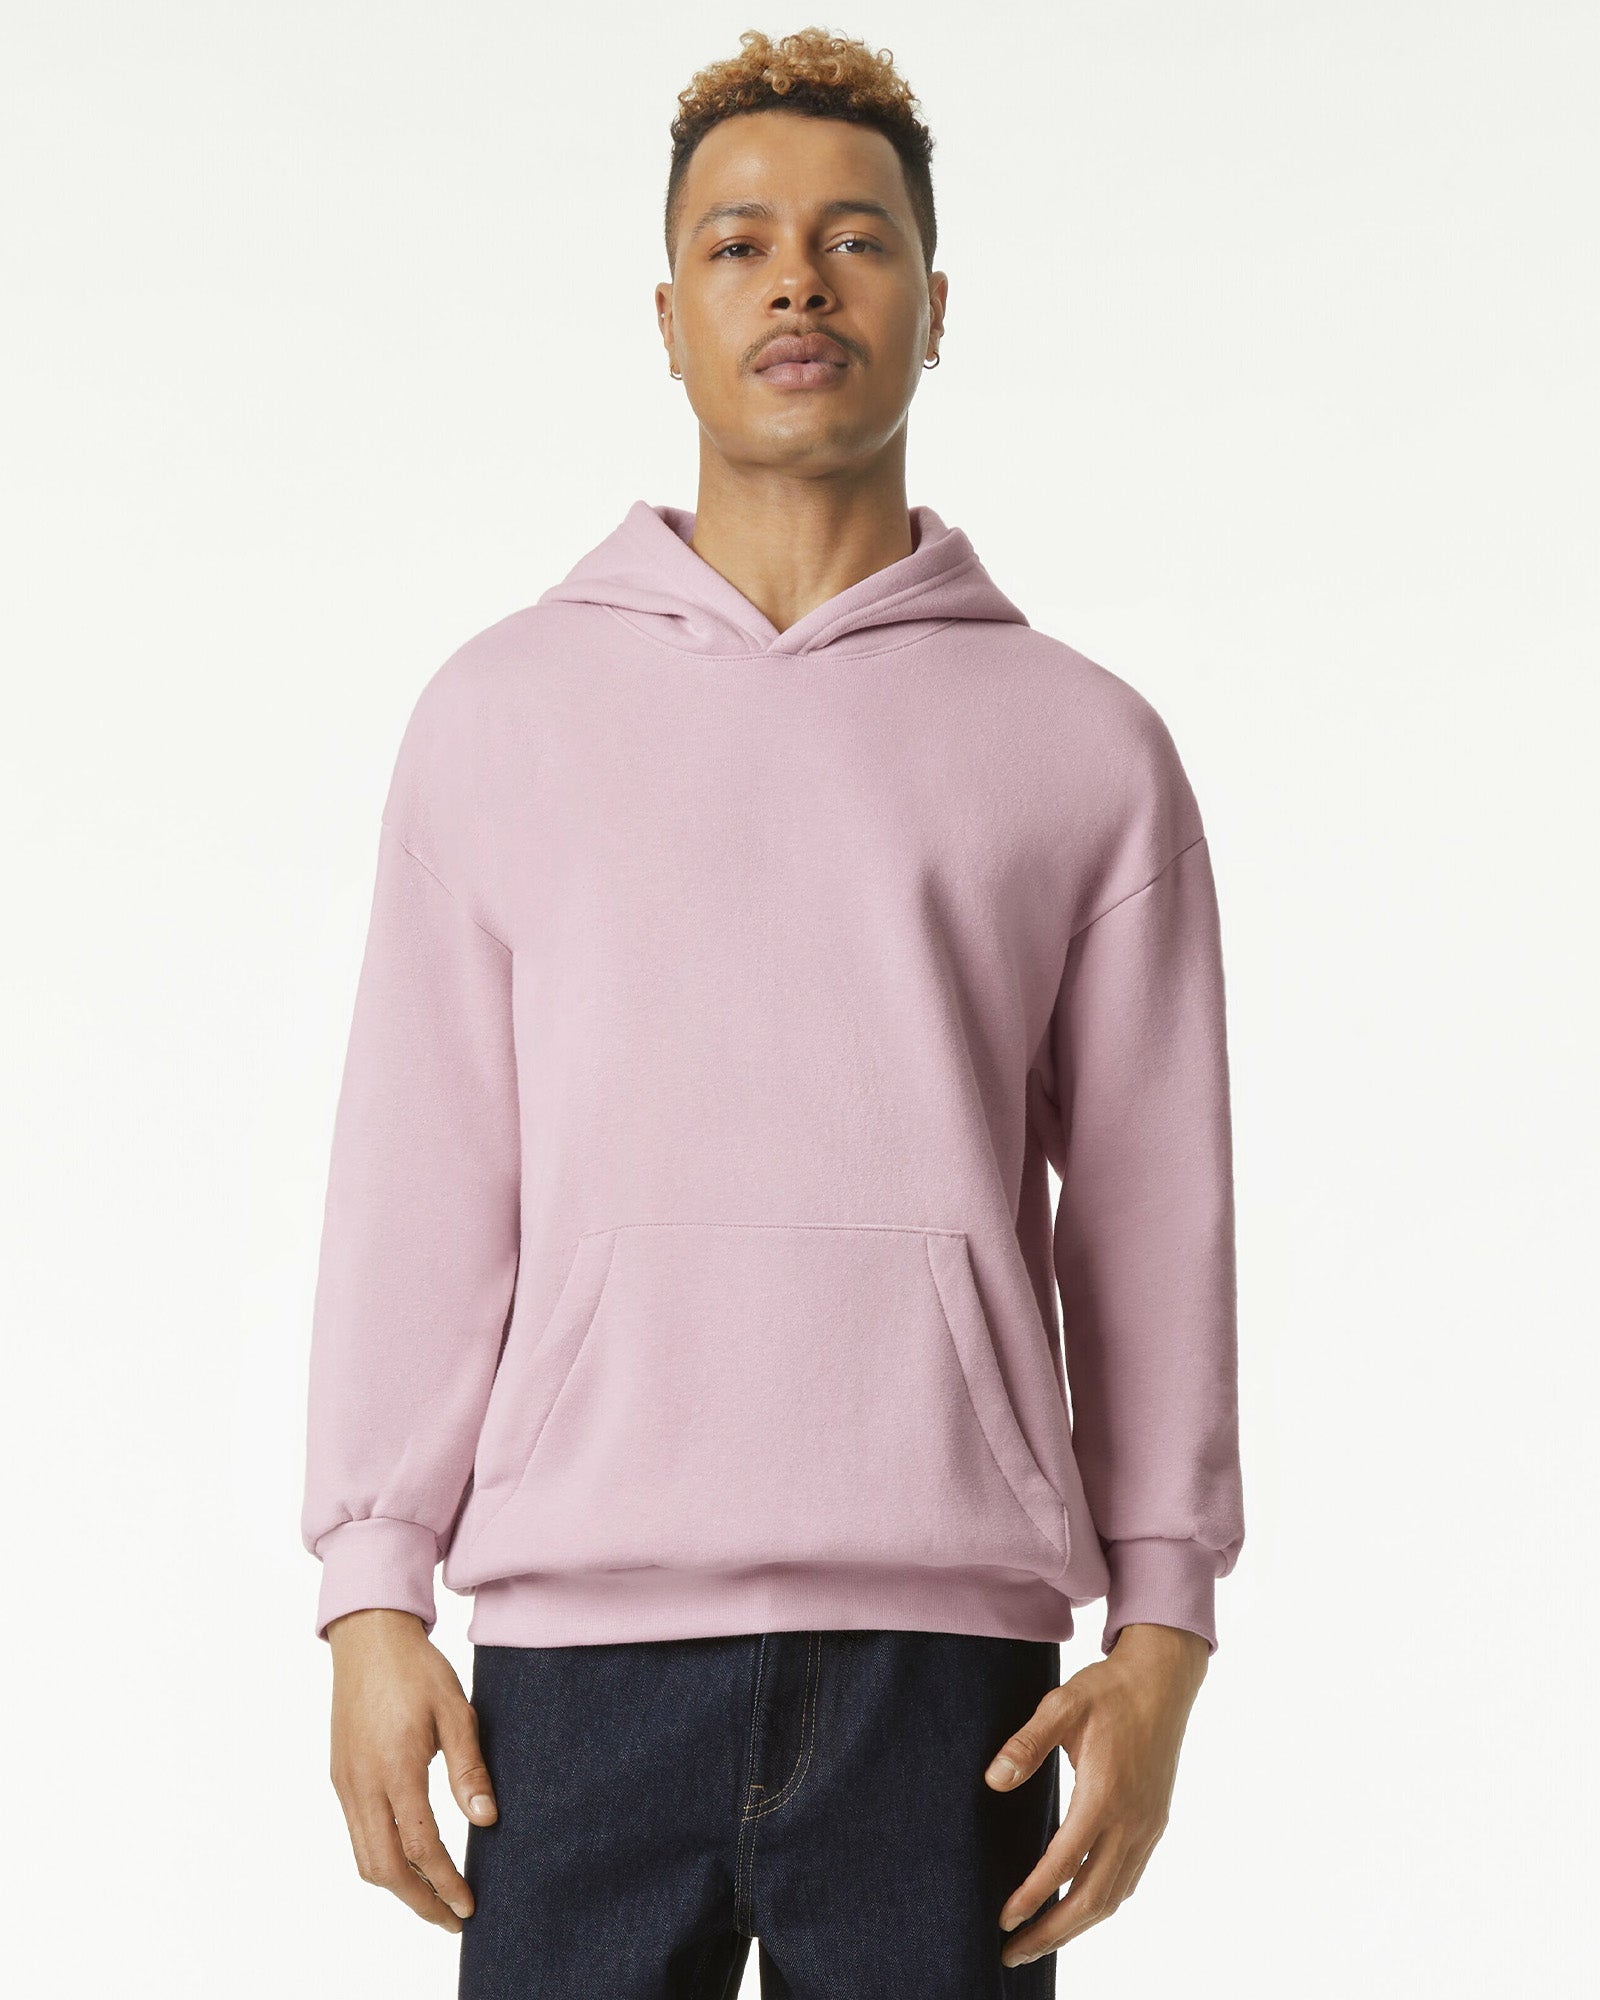 Reflex Unisex Hooded Sweatshirt - Blush